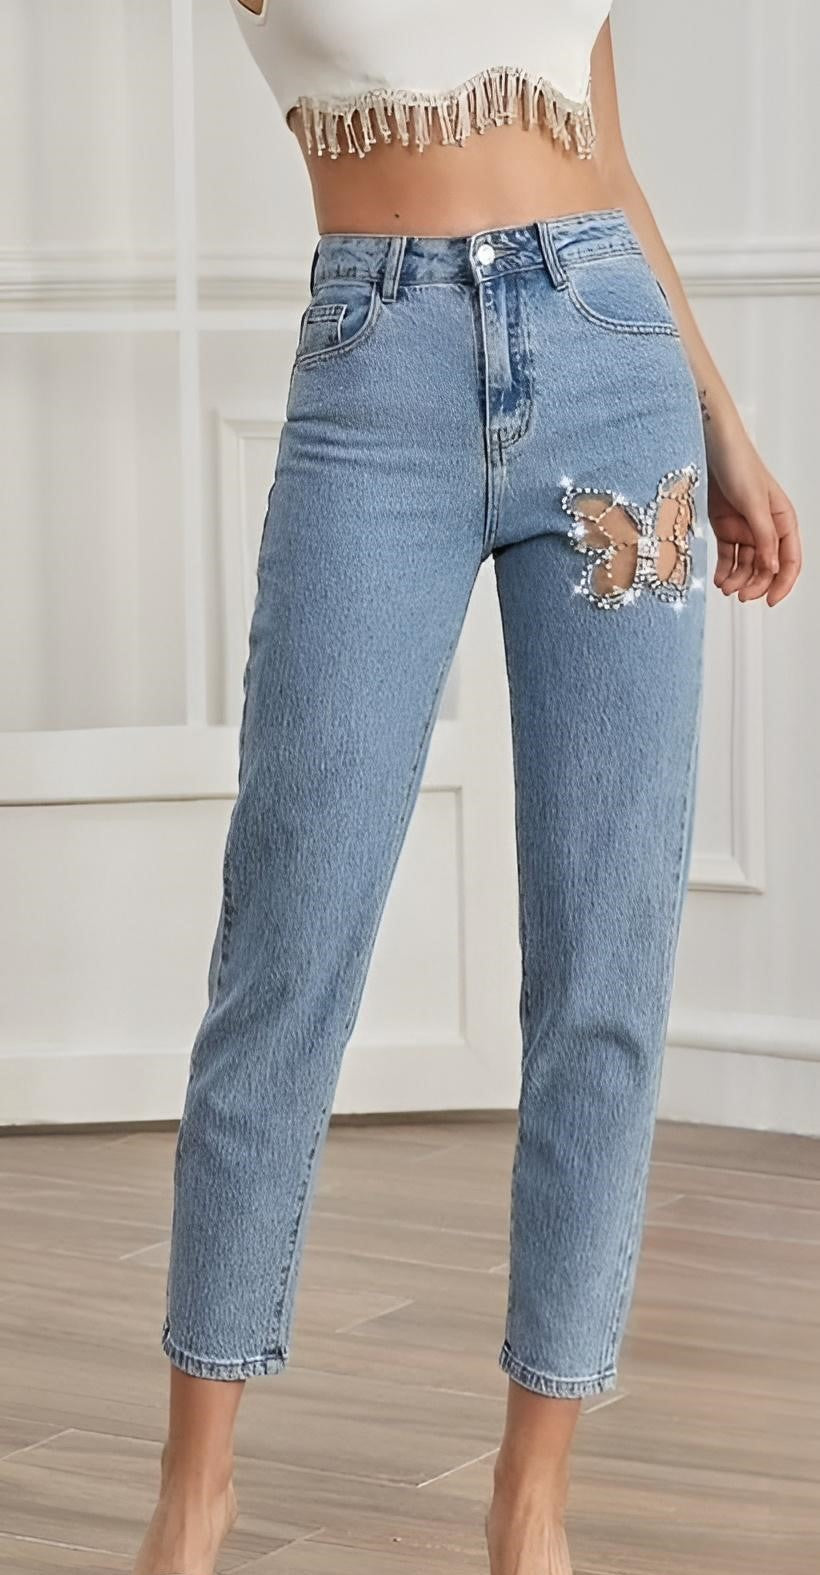 Pantalone Donna Jeans Bottone Tasche Strass Slim Casual - LE STYLE DE PARIS